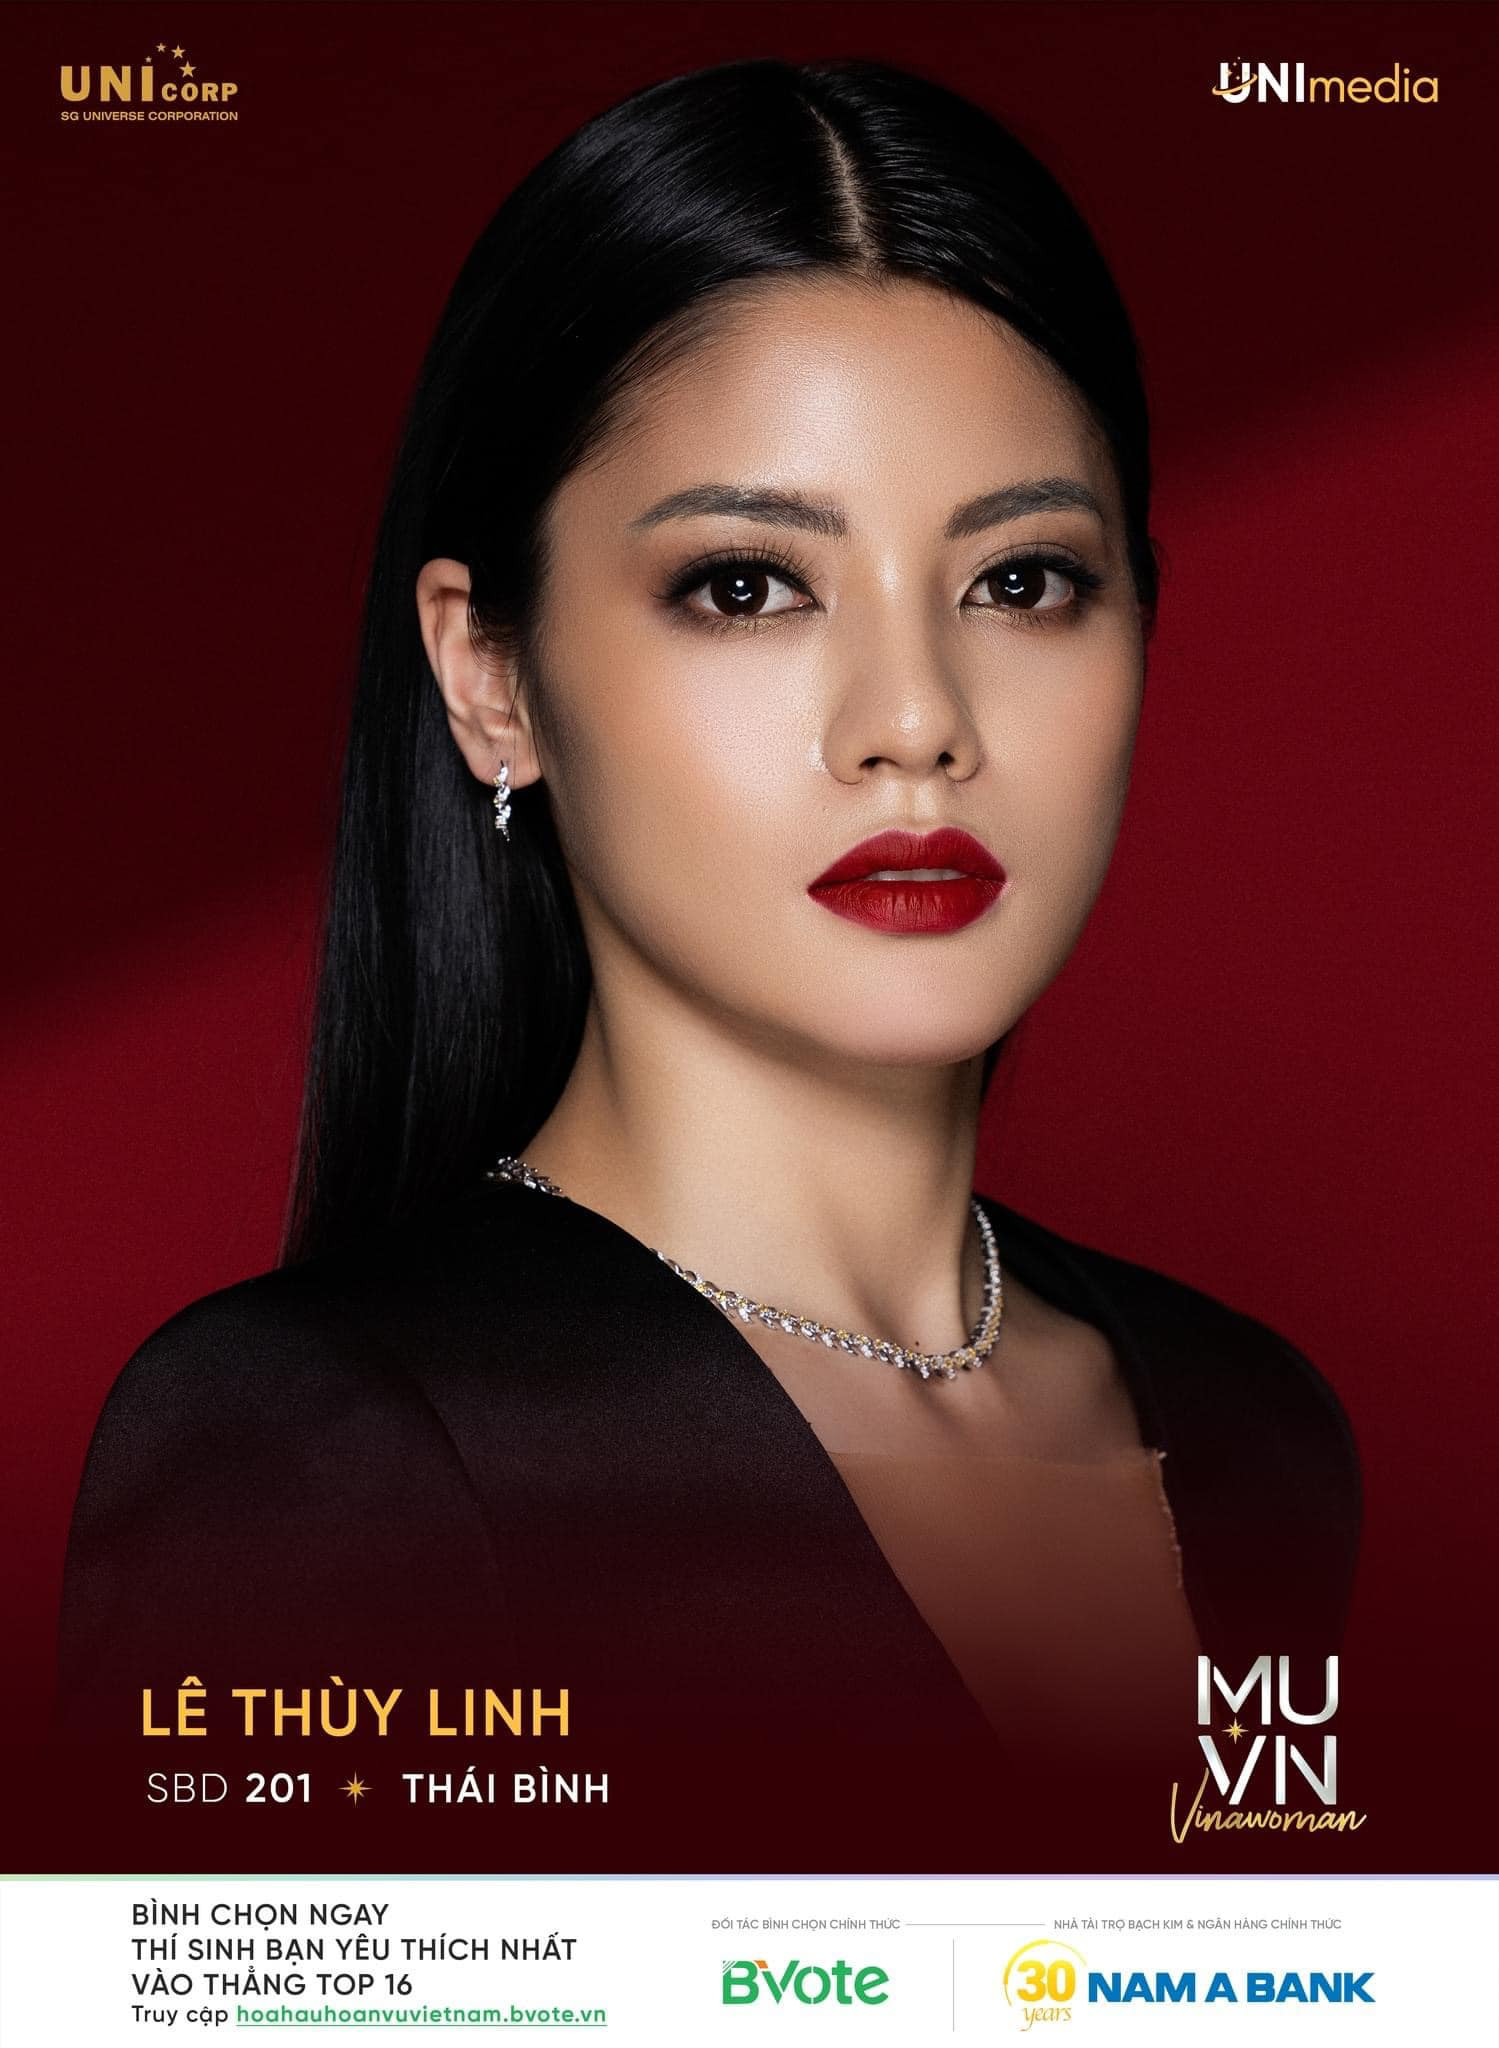 Nguyễn Thị Ngọc Châu - SBD 314 vence miss universe vietnam 2022. - Página 2 VWHt07